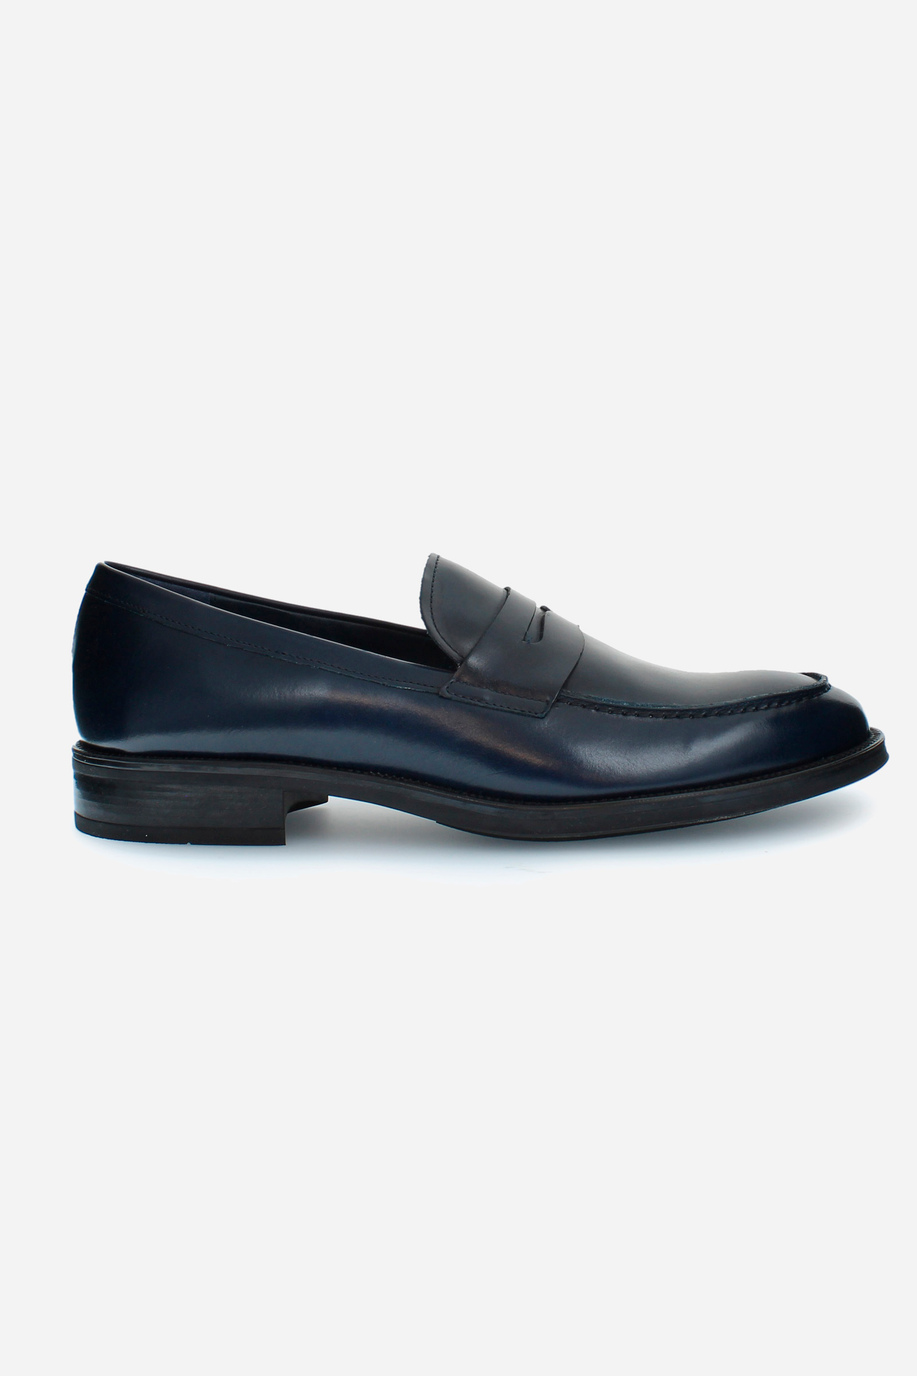 Mocassins collège en cuir pour homme - Chaussures Formelles | La Martina - Official Online Shop